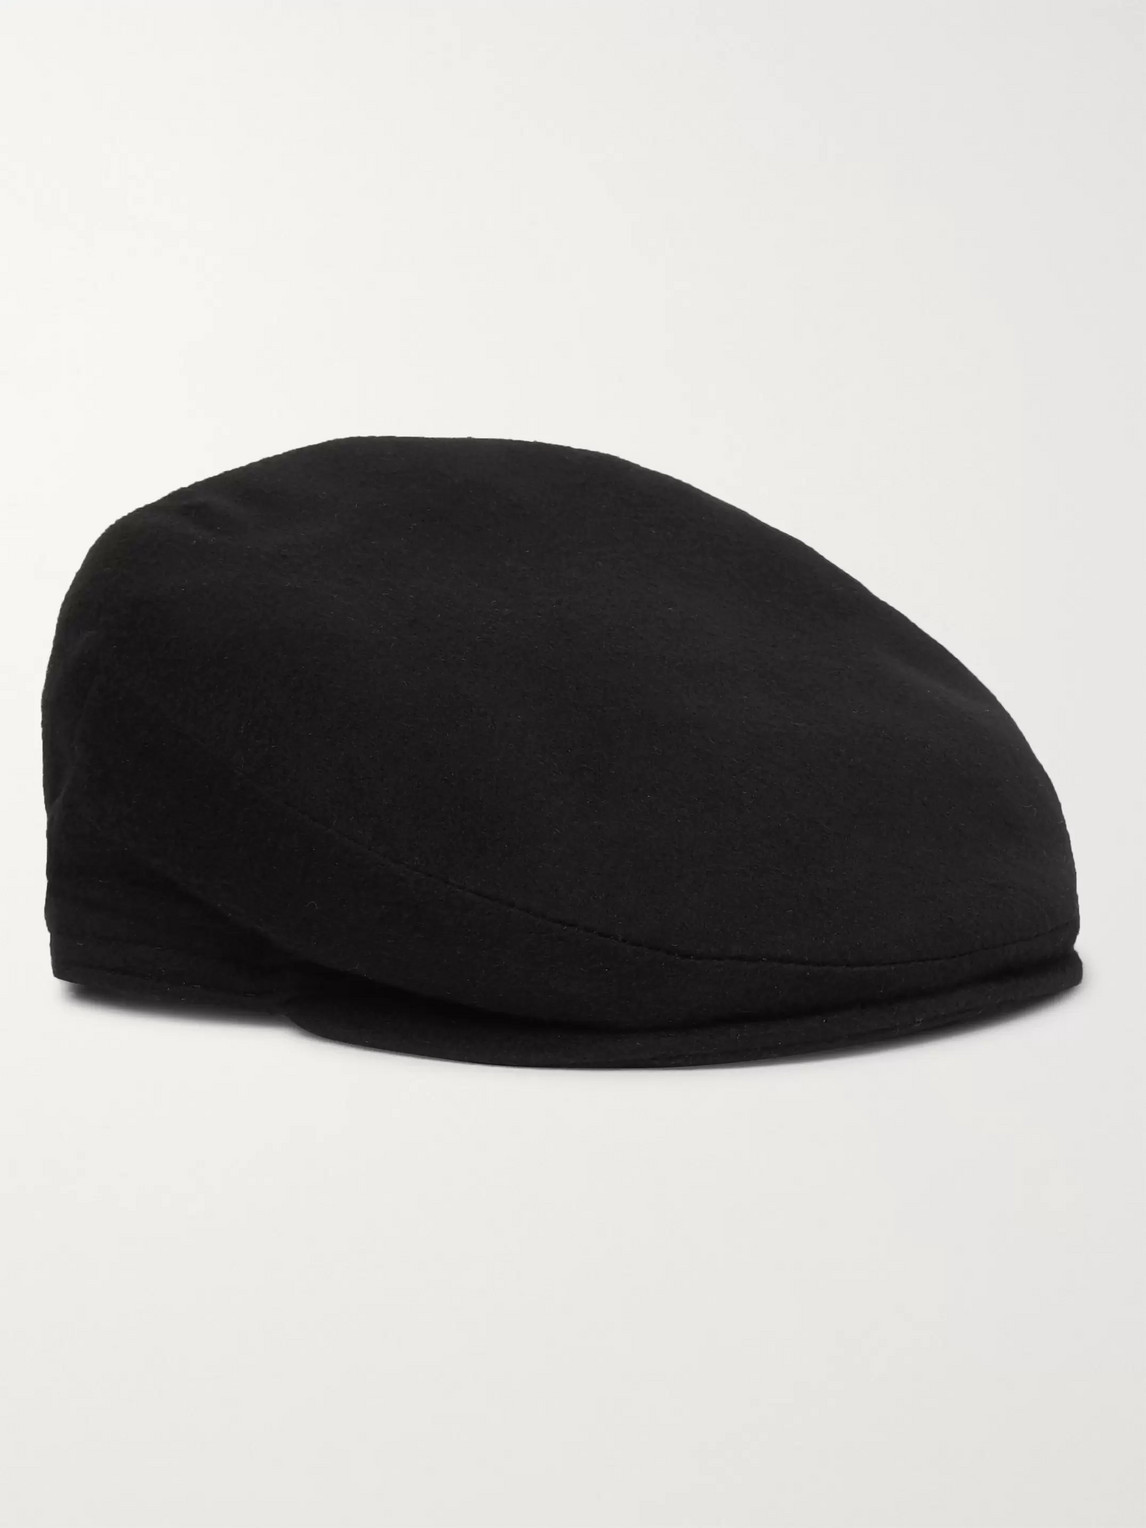 Lock & Co Hatters Oslo Wool-felt Flat Cap In Black